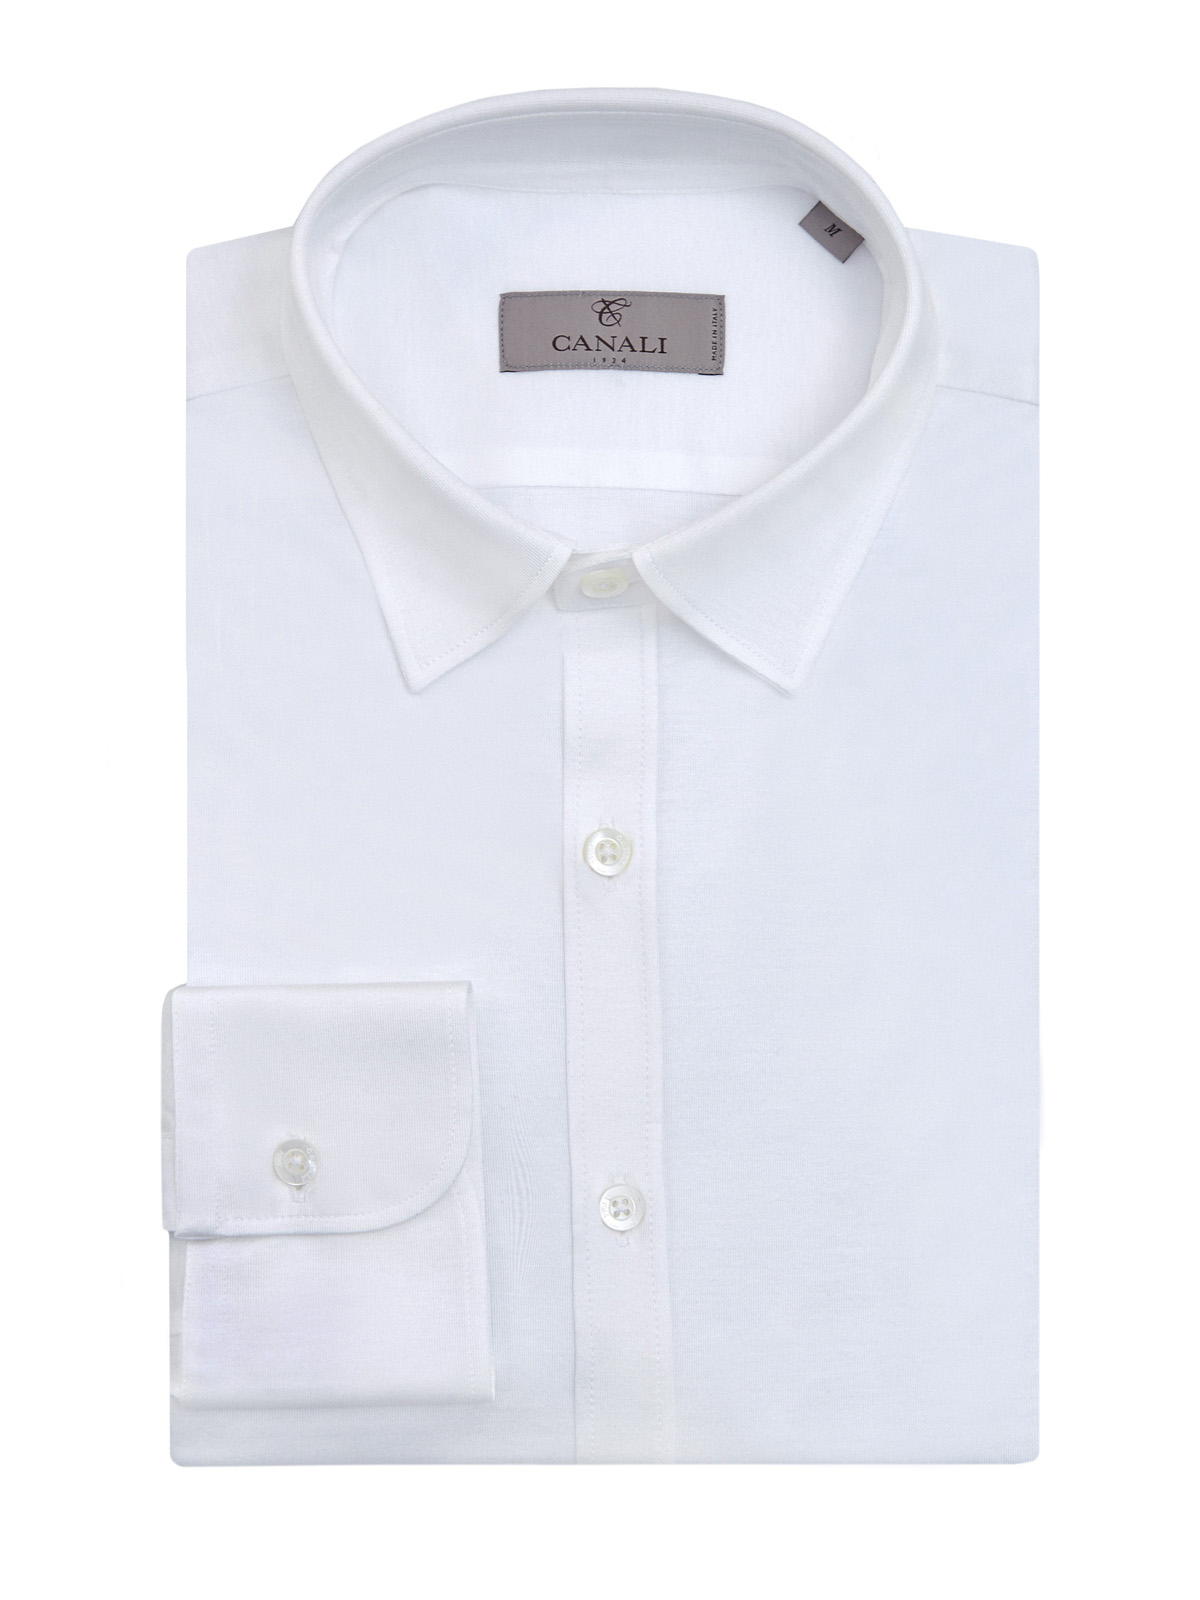 Однотонная рубашка в стиле sprezzatura из мягкого хлопка CANALI, цвет белый, размер 48;50;52;54